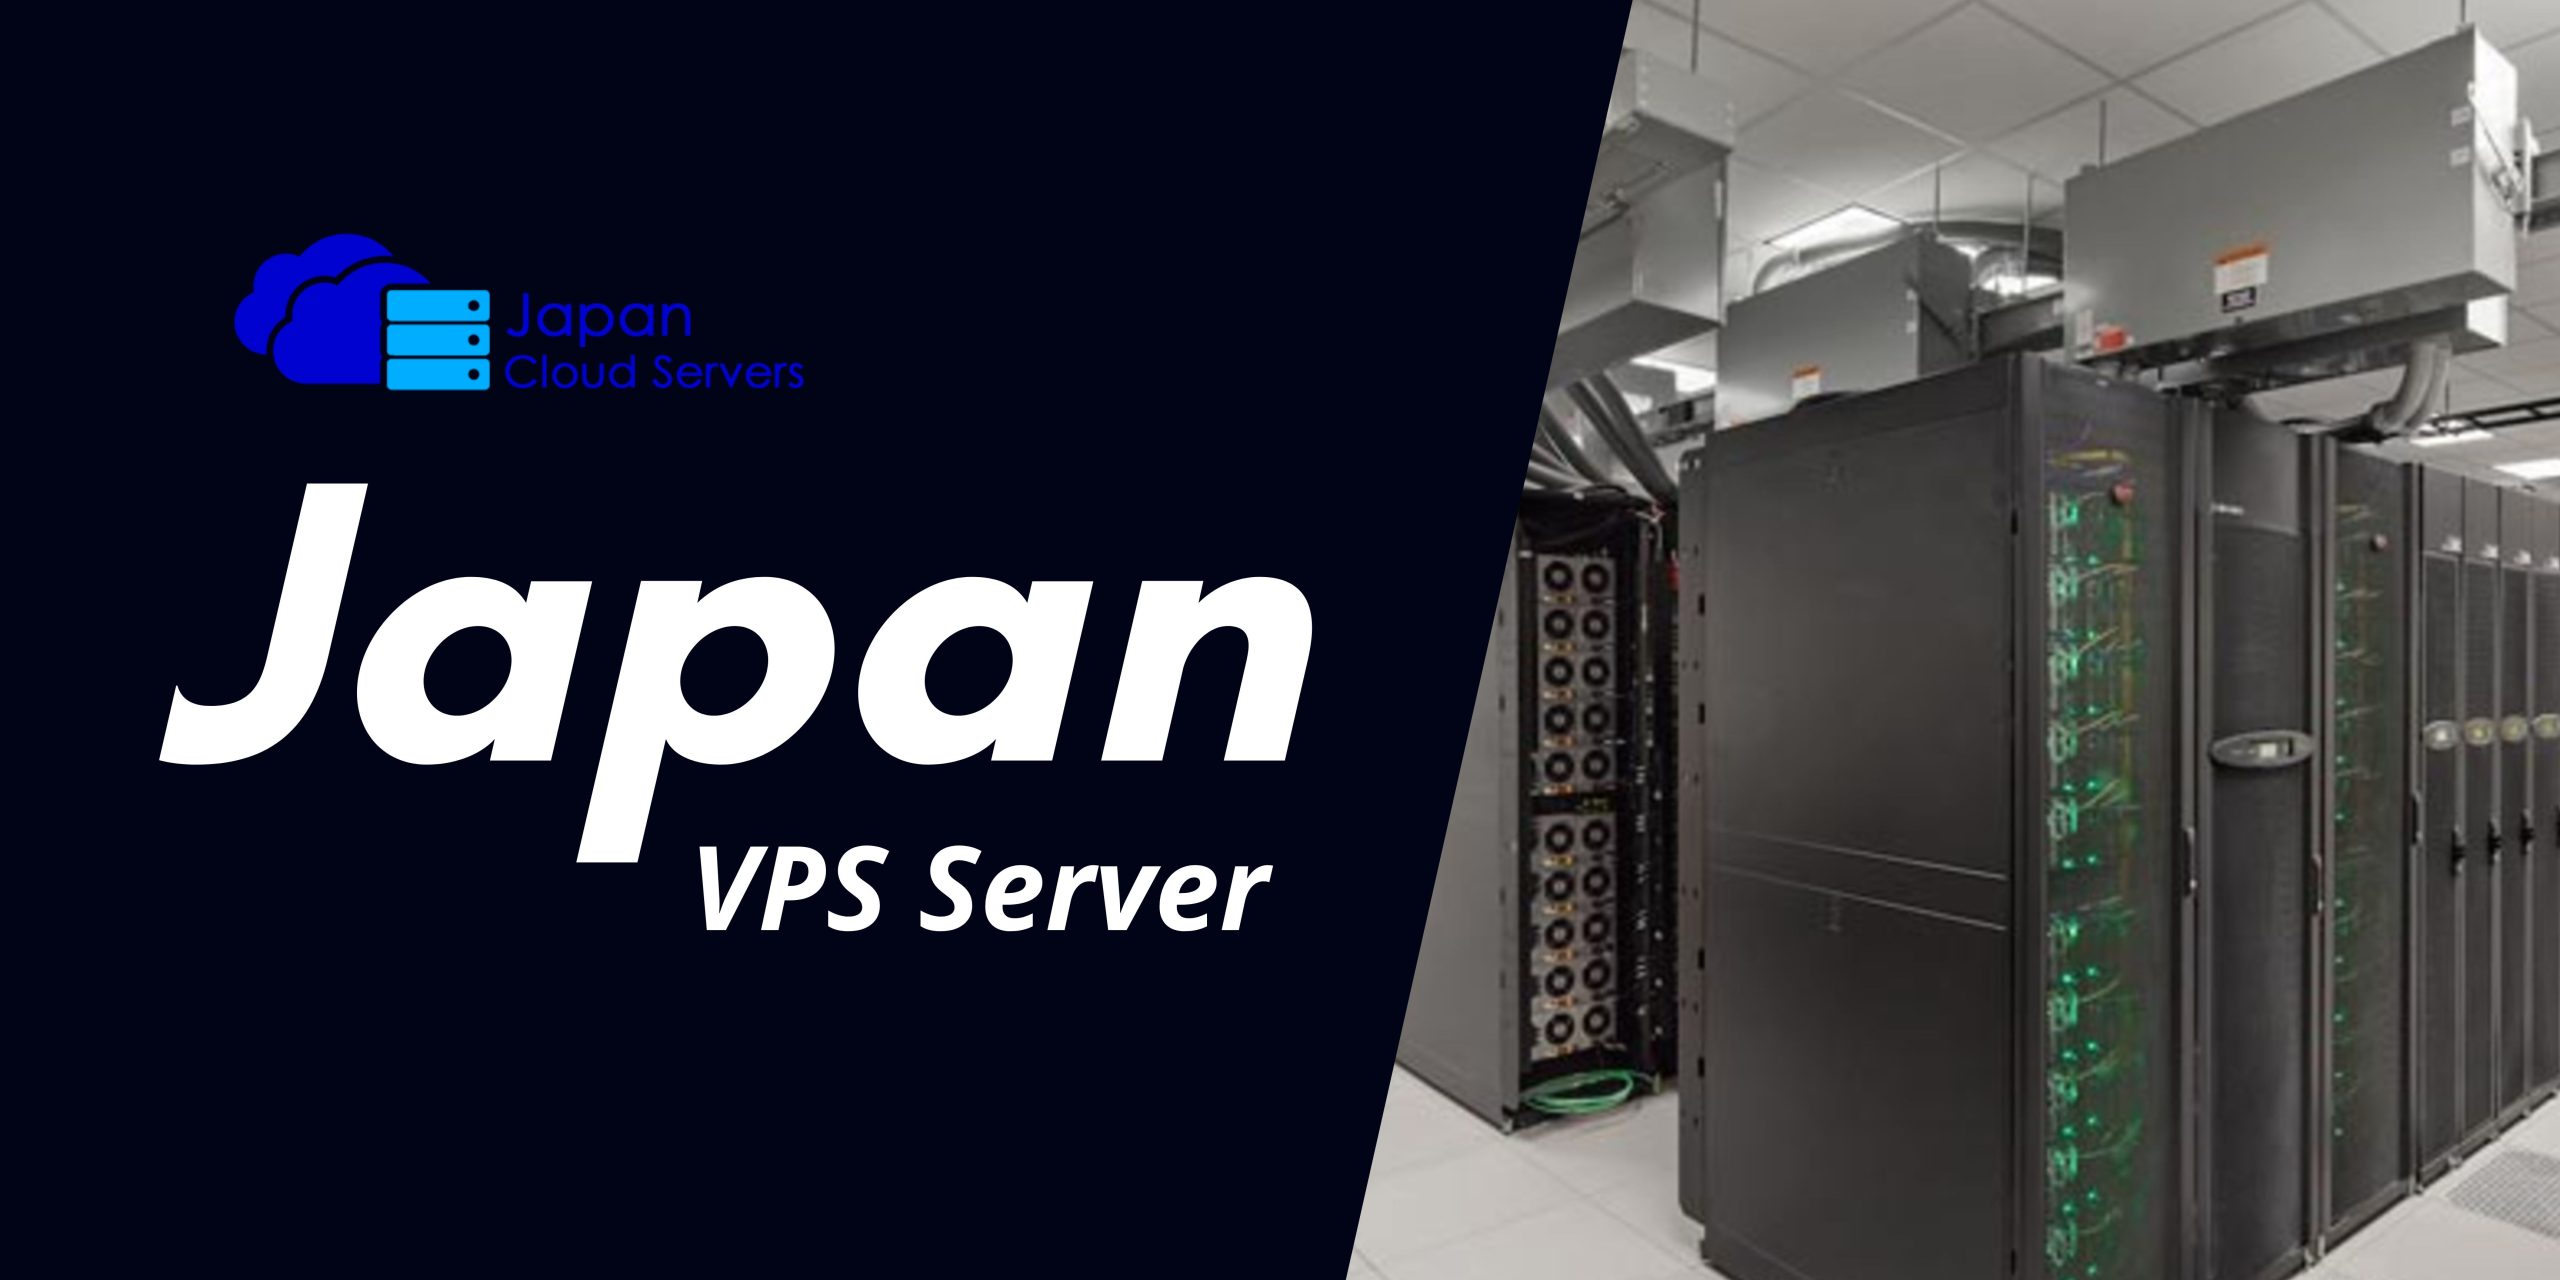 Japan VPS Server